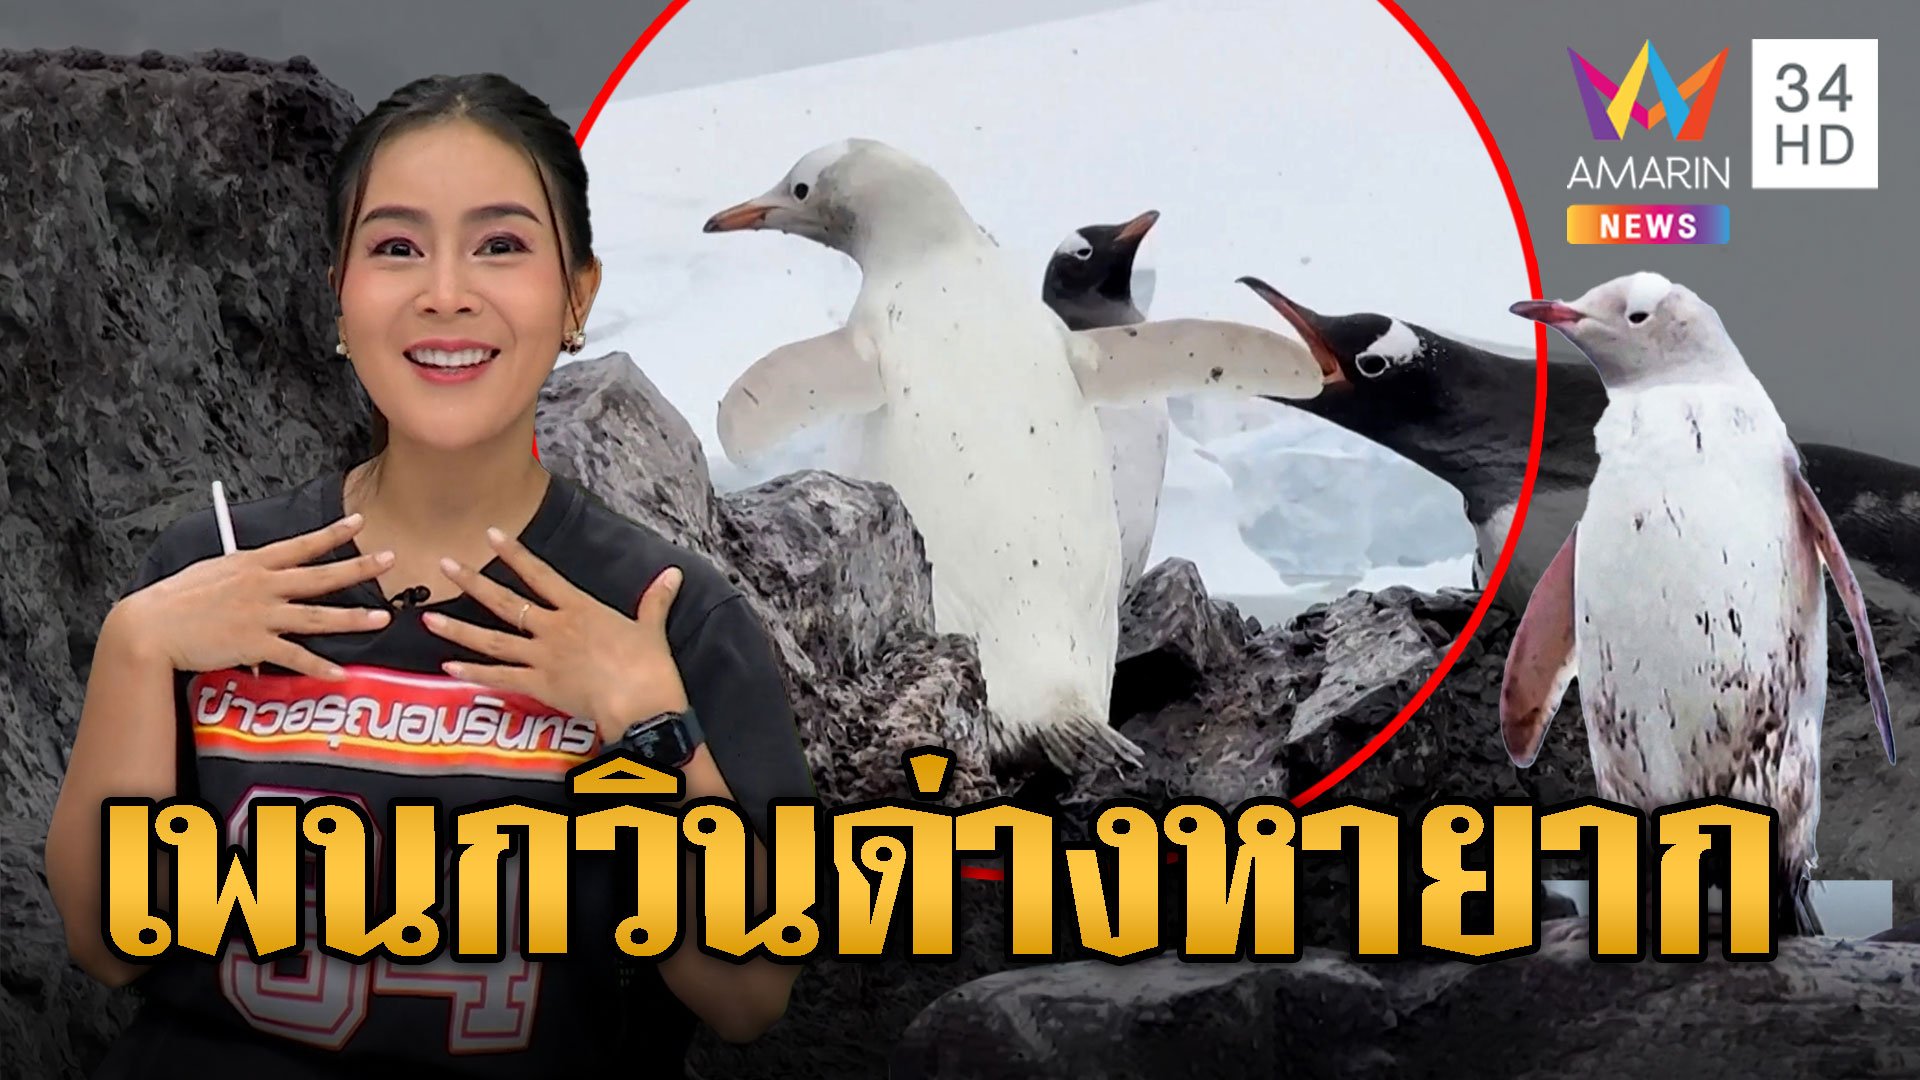 หาดูยาก! เพนกวินด่าง กลางฝูงไม่เหมือนเพื่อนๆ | ข่าวอรุณอมรินทร์ | 20 ม.ค. 67 | AMARIN TVHD34